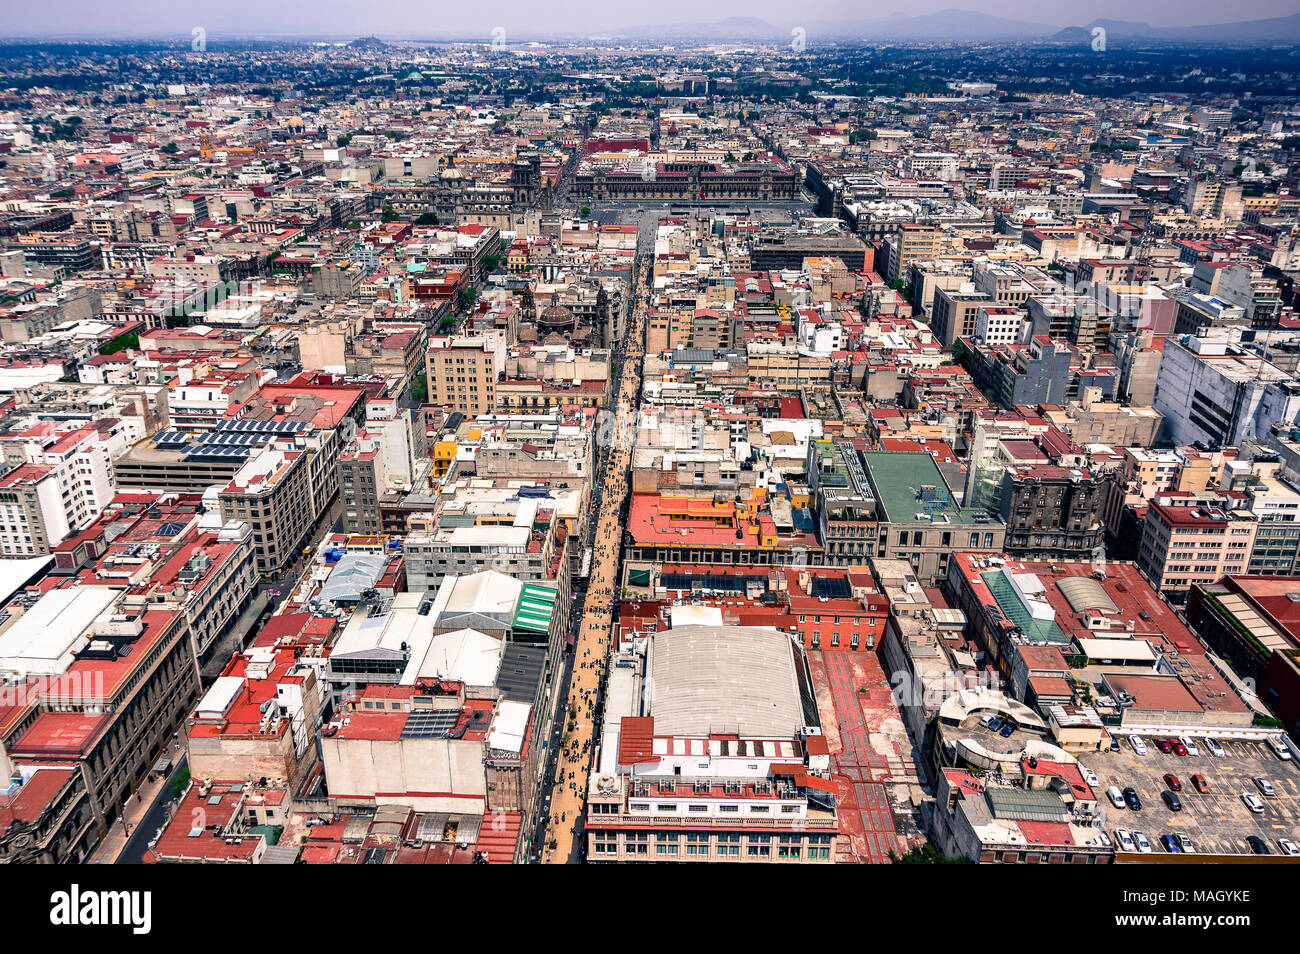 A view of Mexico City from the Latin America tower / Una vista del Torre Latinoamericana en Ciudad de México Stock Photo